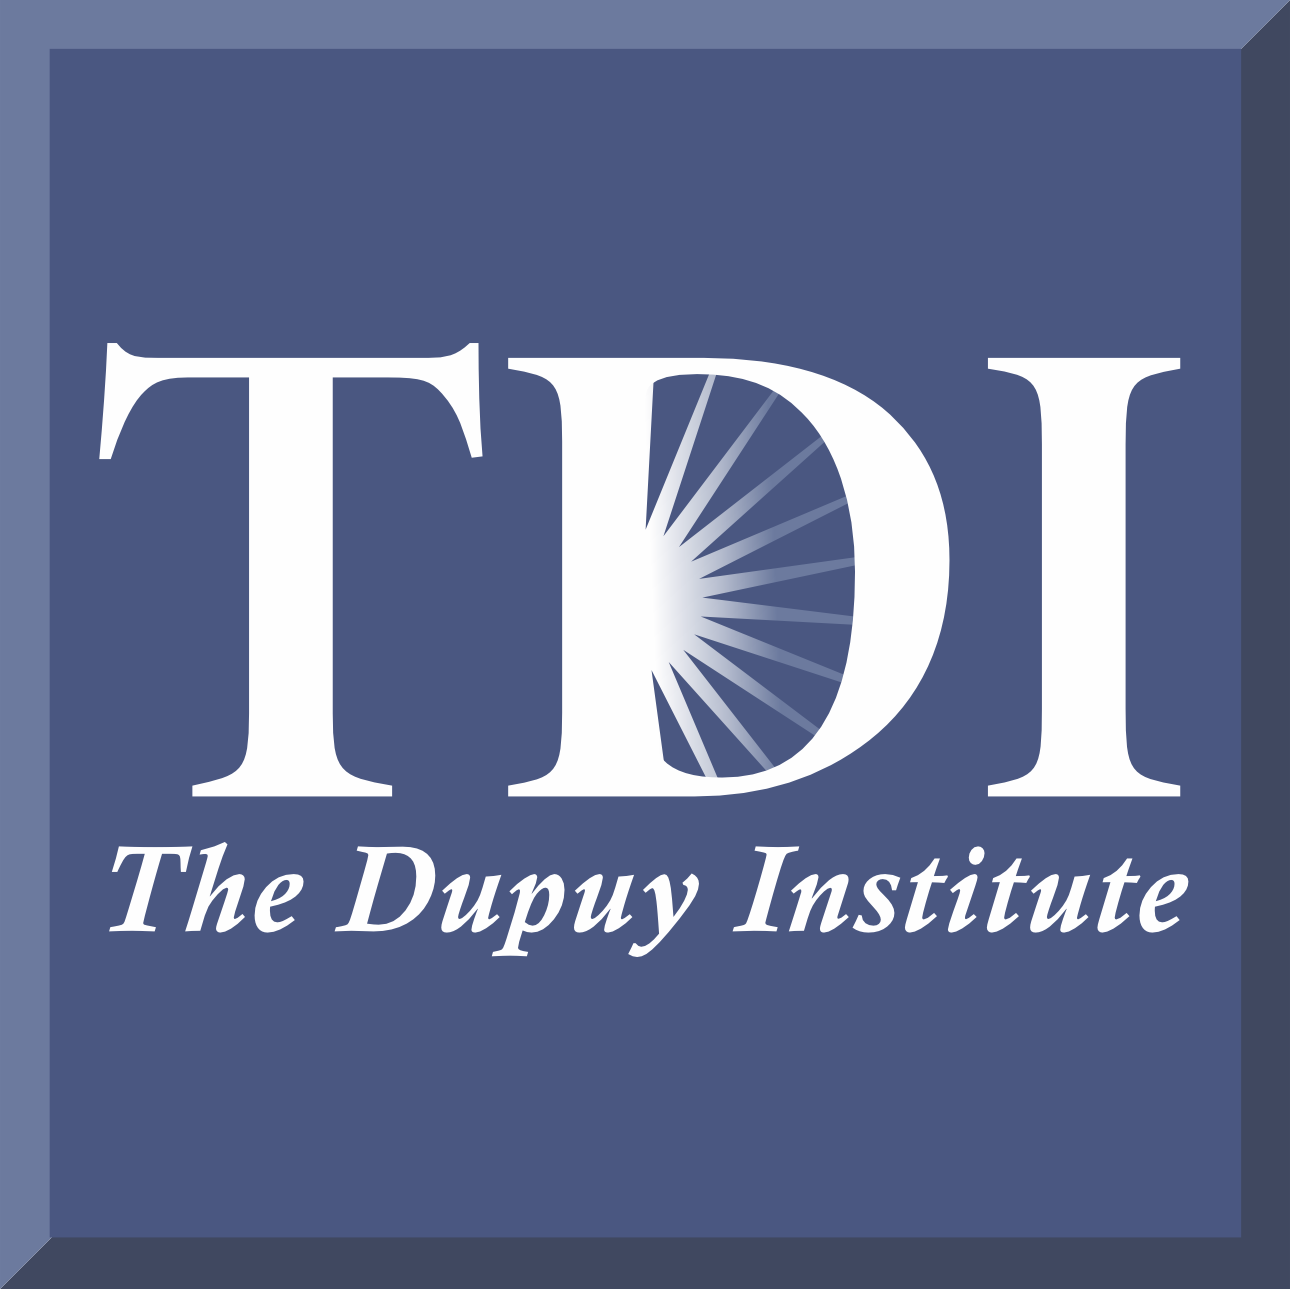 The Dupuy Institute